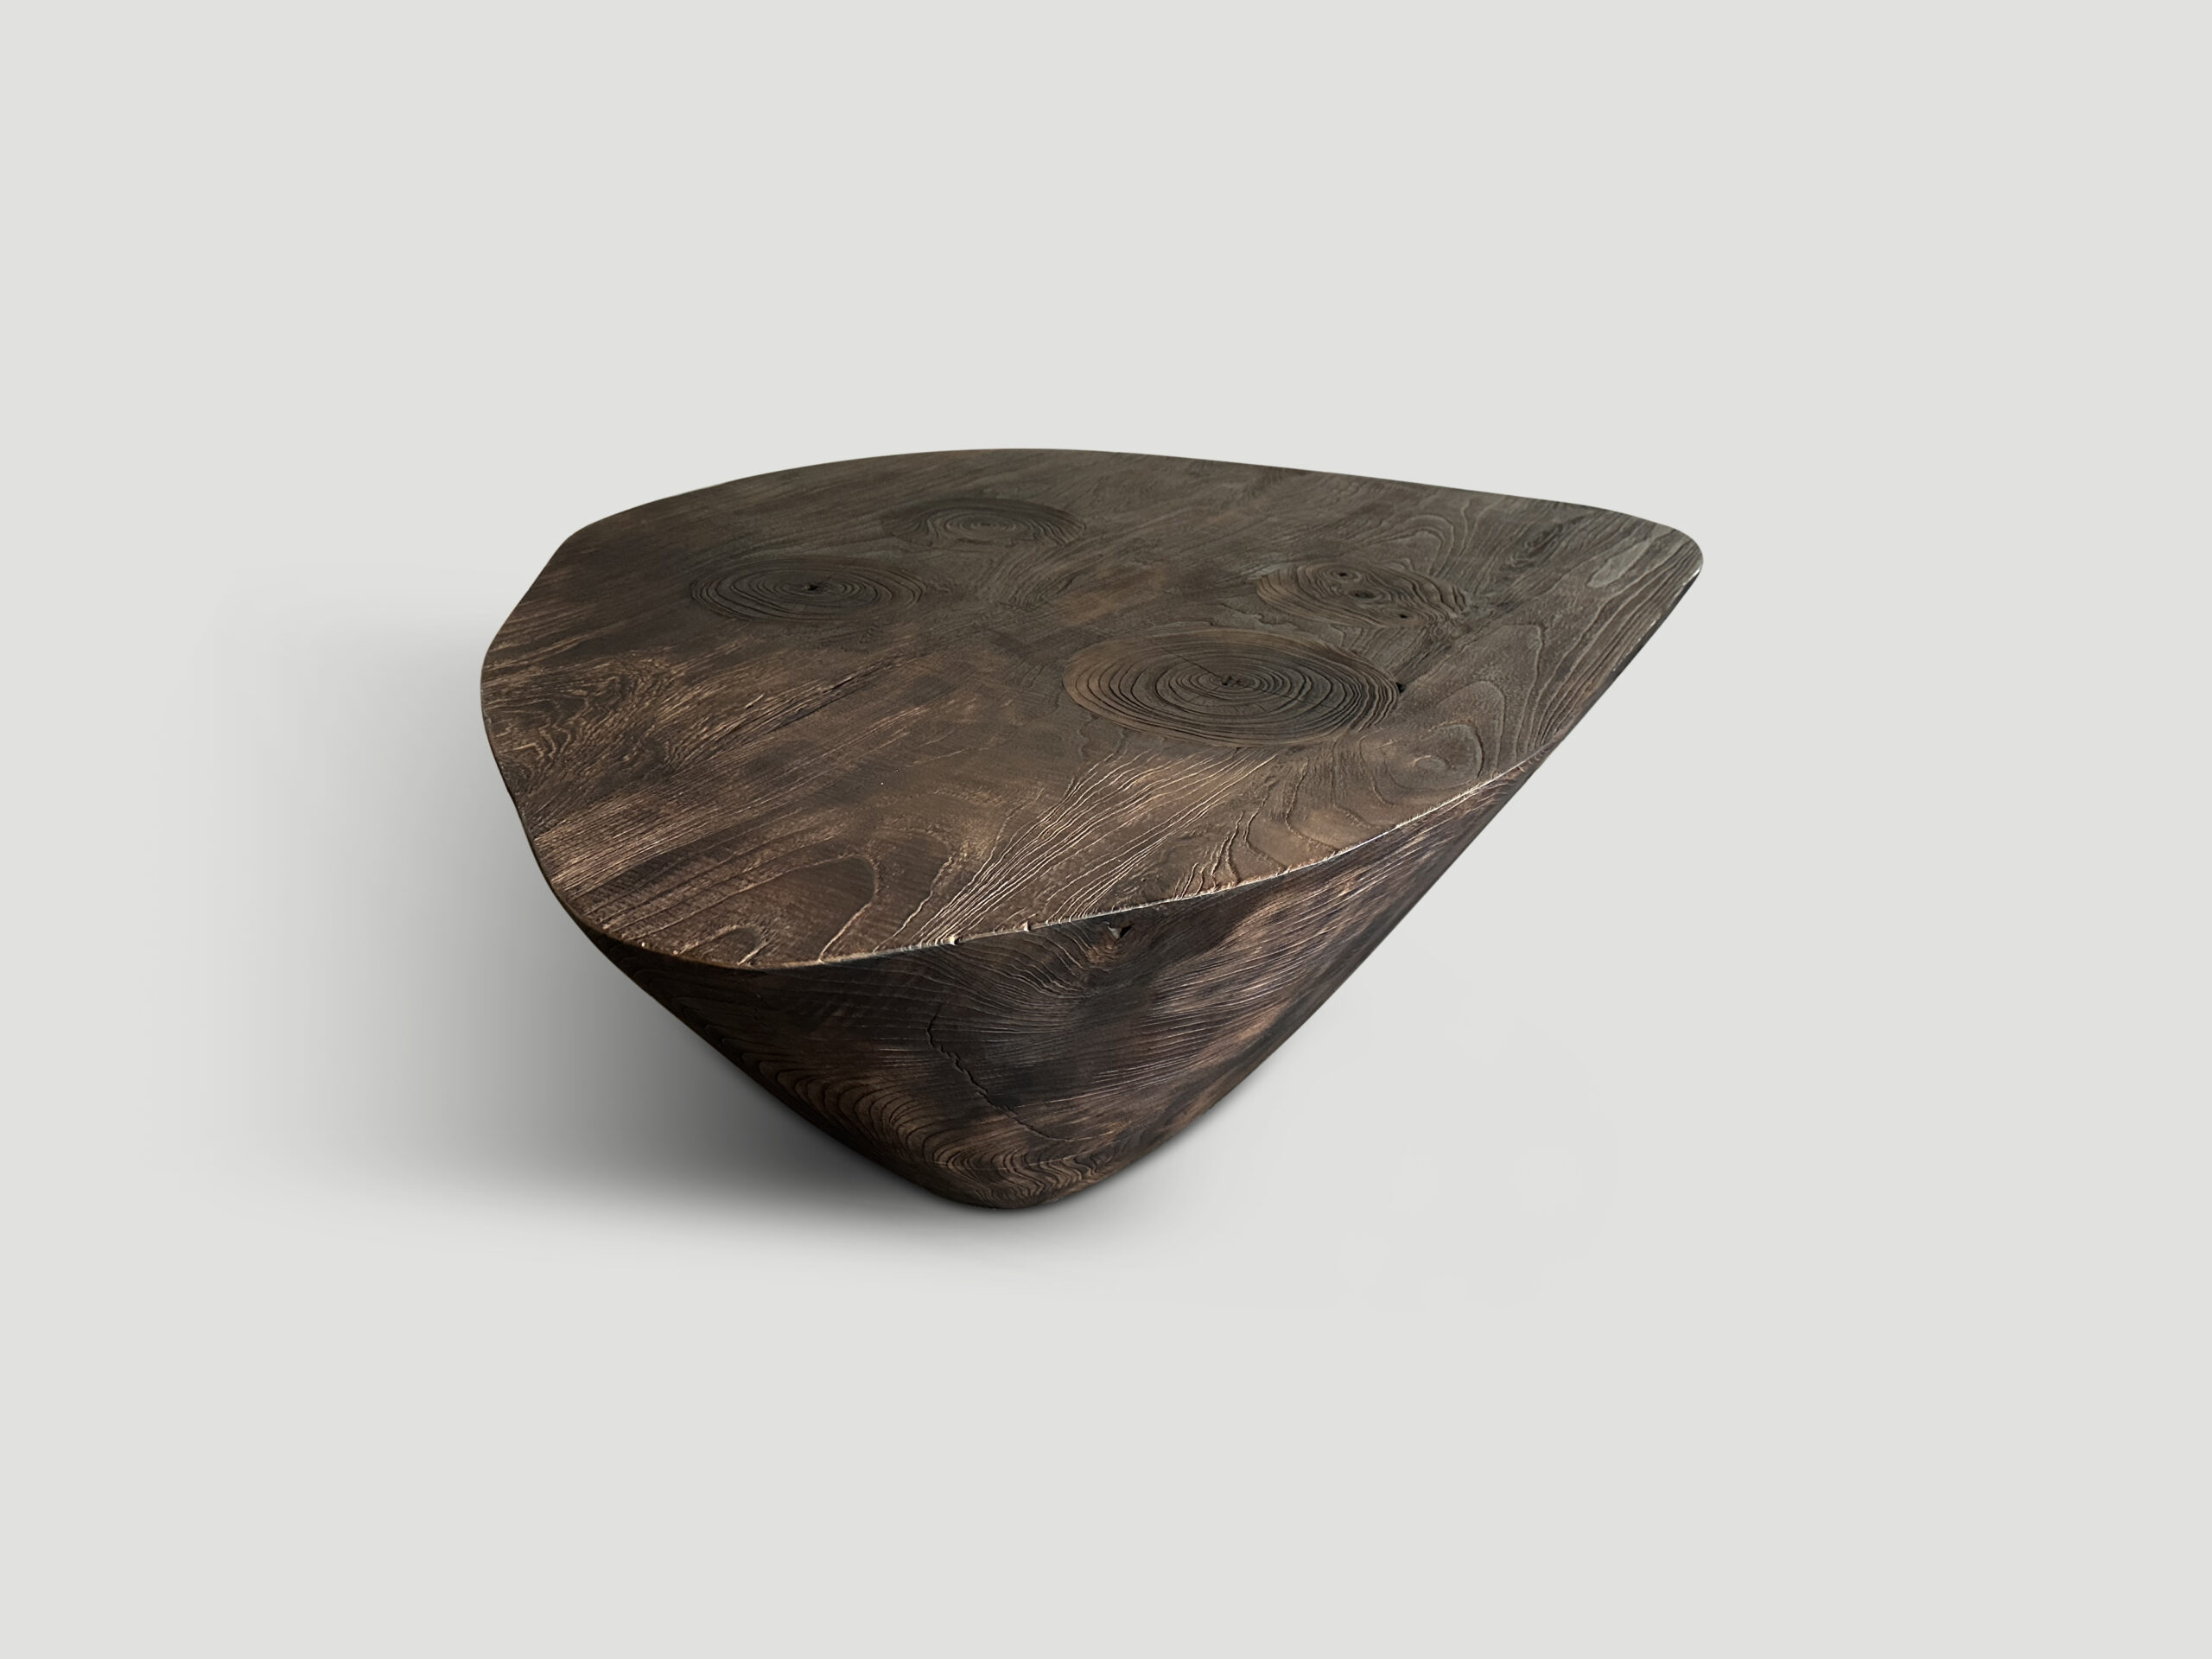 teak wood minimalist coffee table